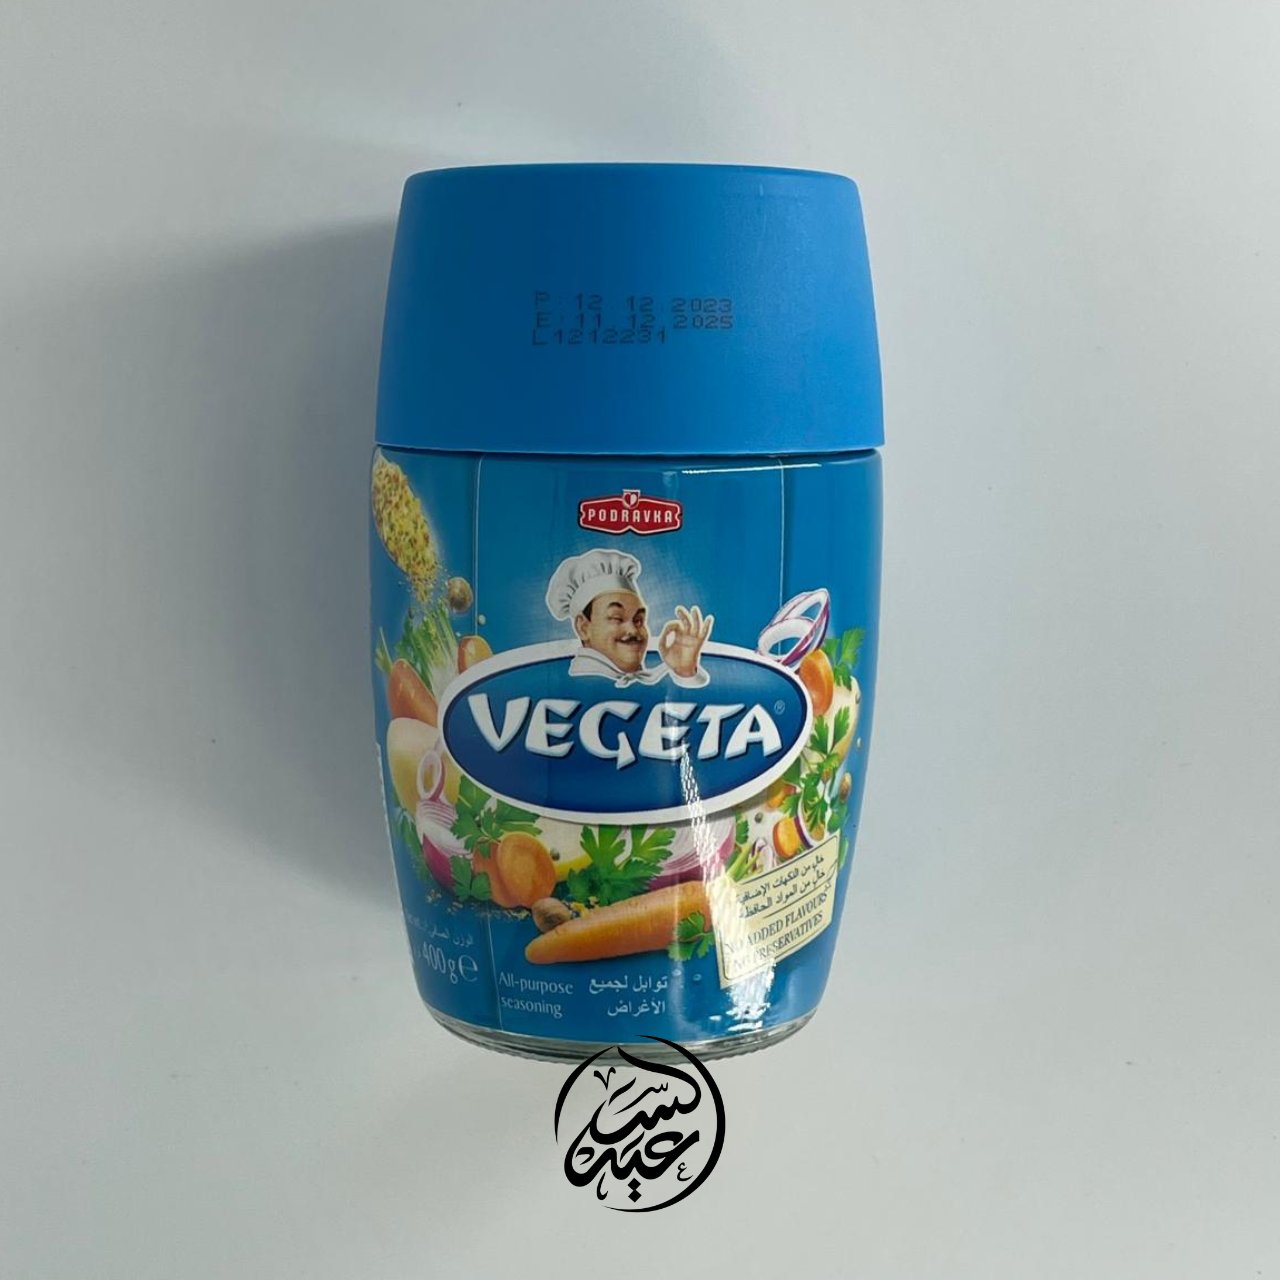 Vegeta Spice بهار فيجيتا - بهارات و عطارة السعيد